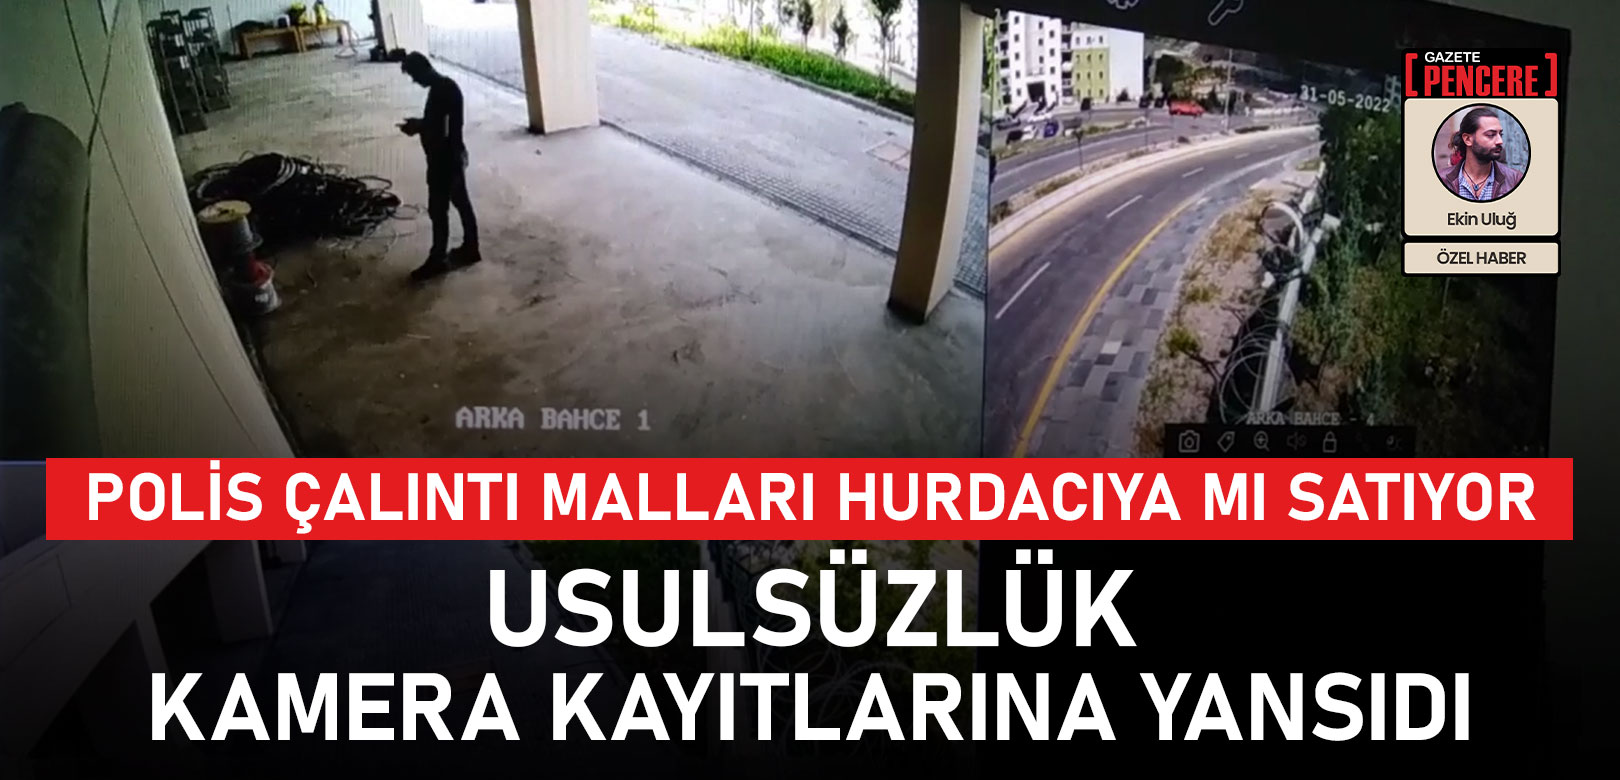 Polis çalıntı malları hurdacıya mı satıyor: Ankara'da usulsüzlüğün görüntüleri ortaya çıktı